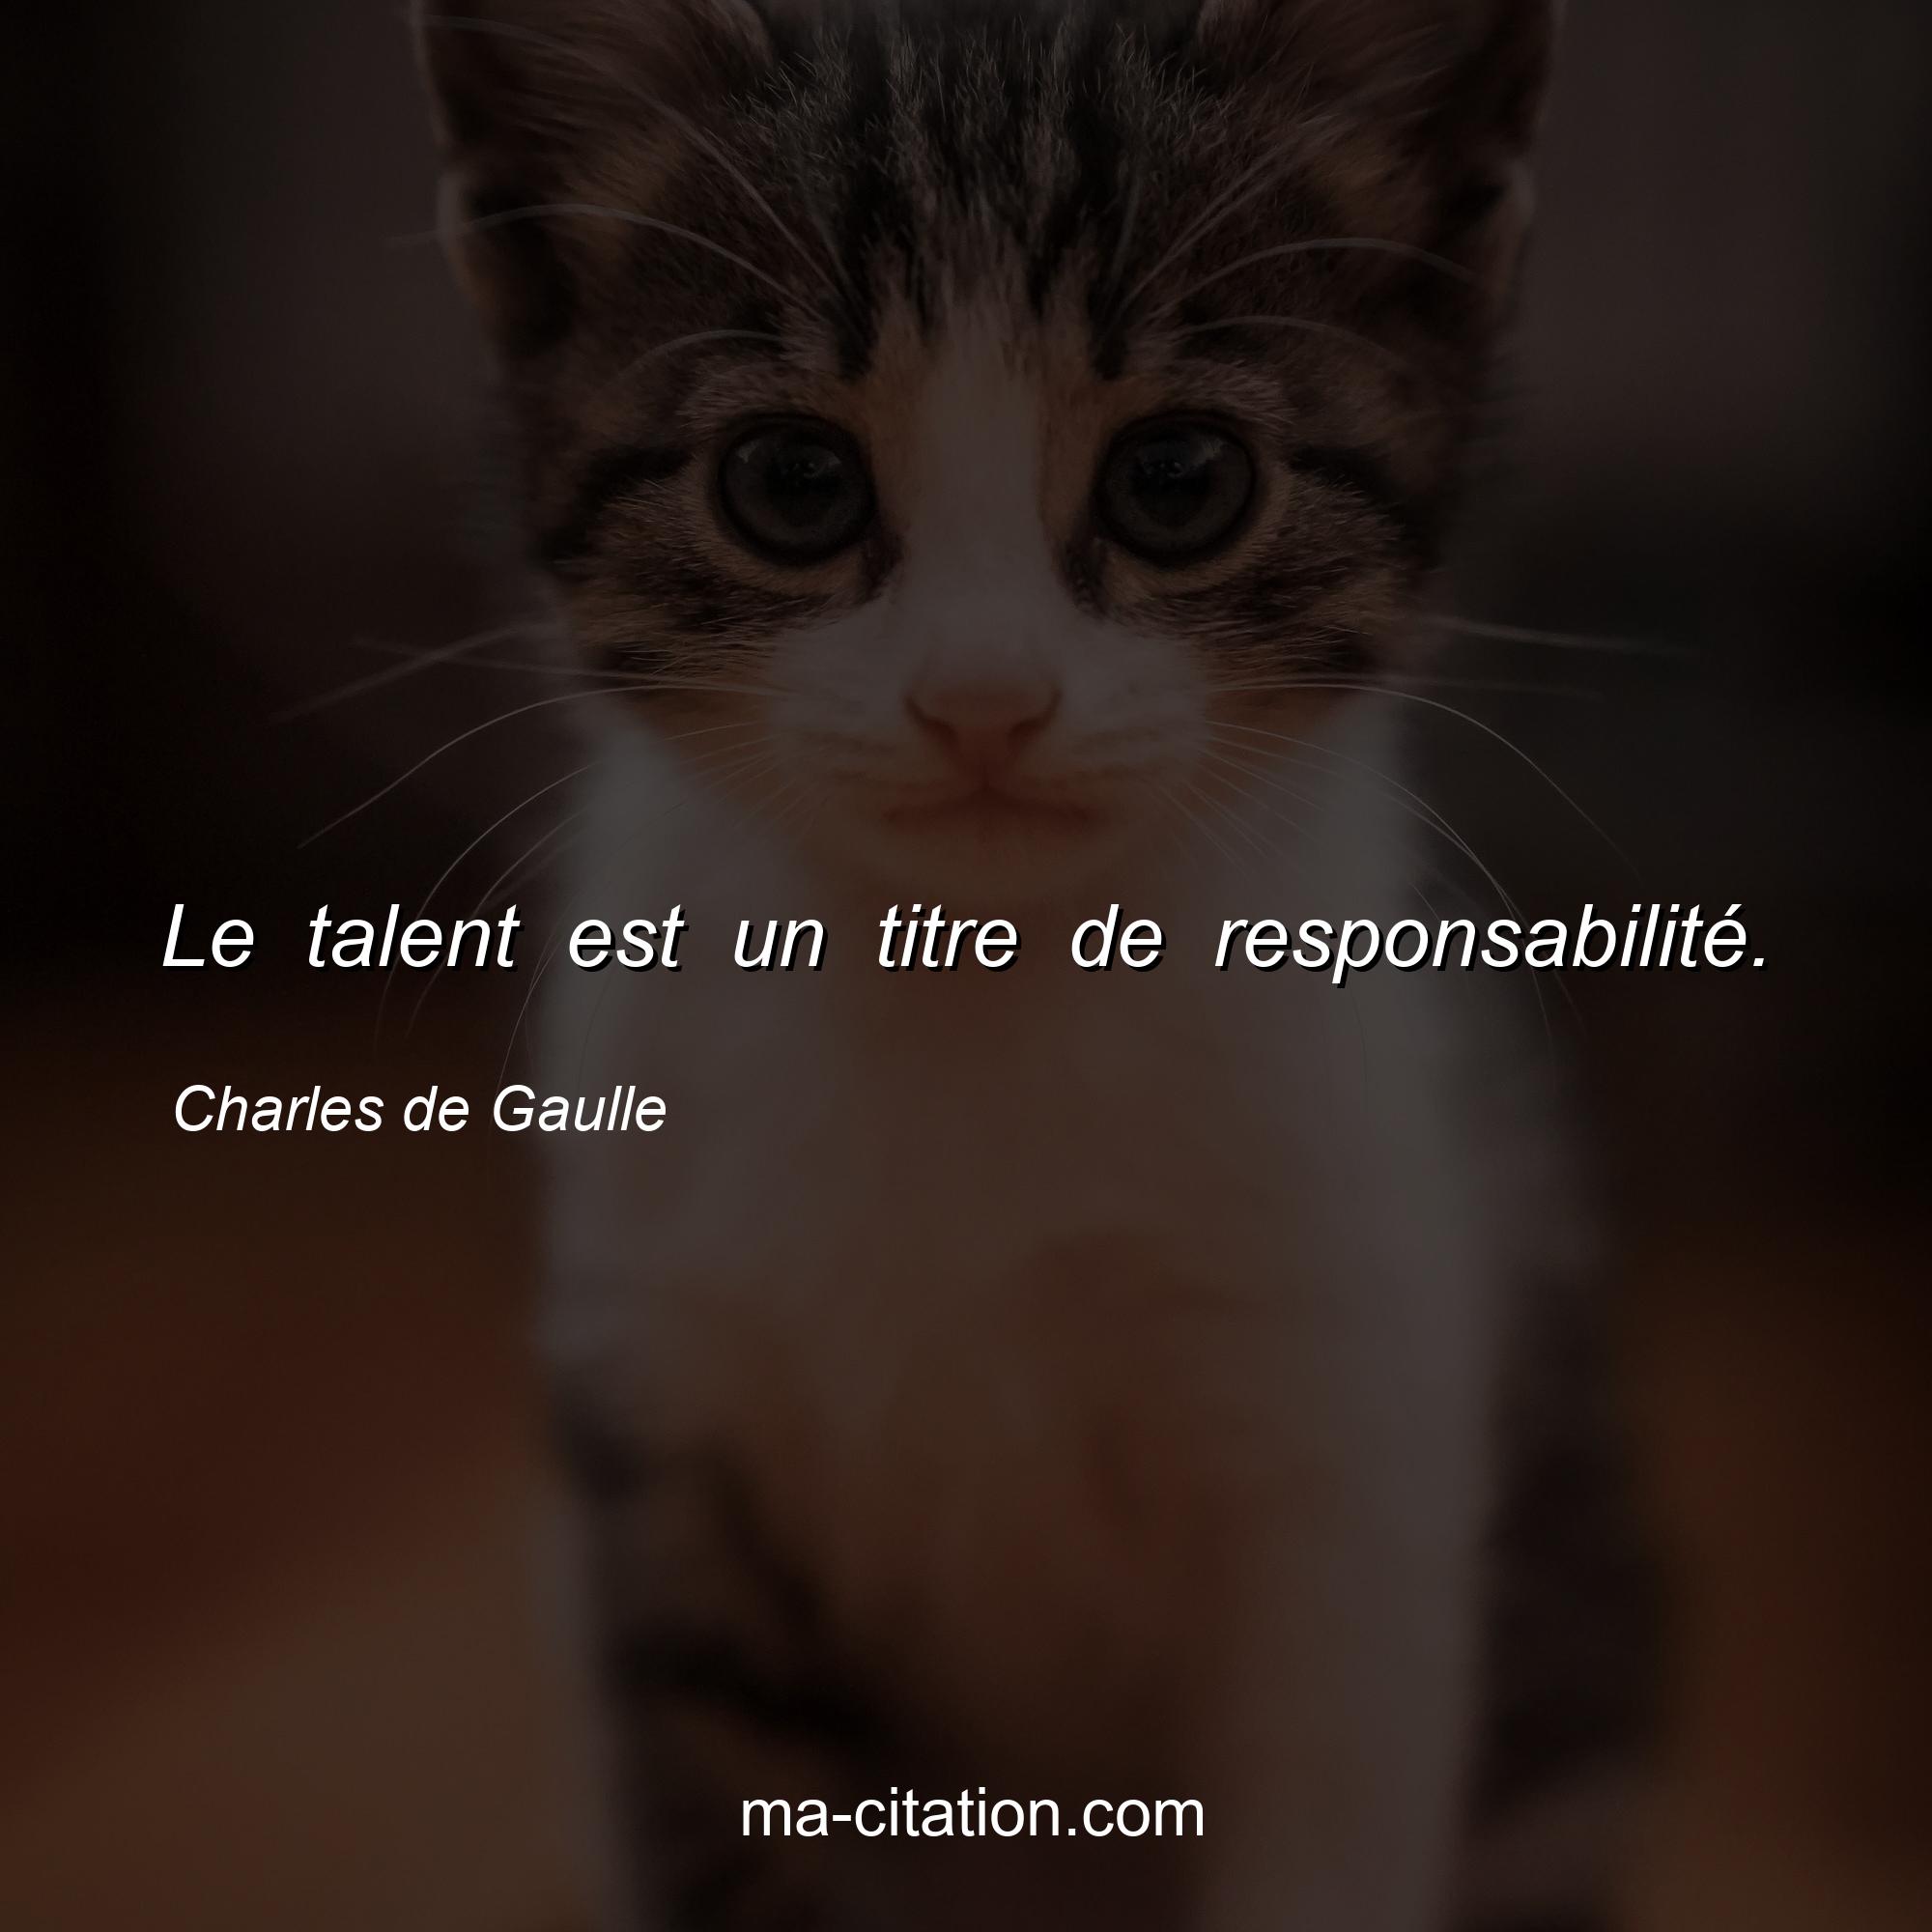 Charles de Gaulle : Le talent est un titre de responsabilité.